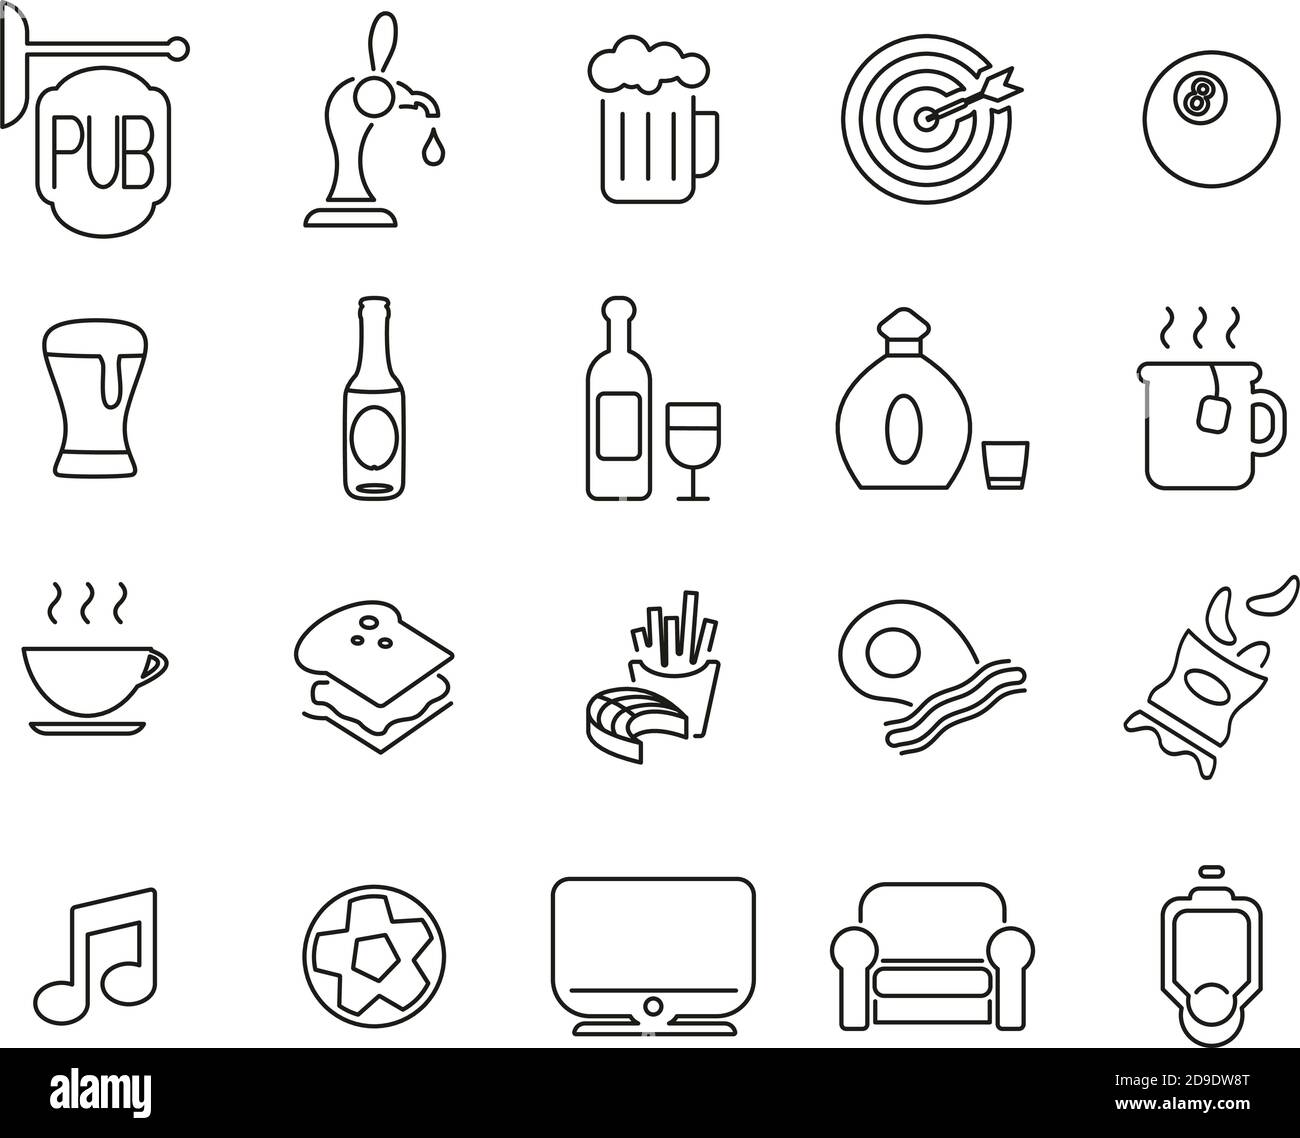 Icone di pub o bar Set sottile in bianco e nero Grande Illustrazione Vettoriale